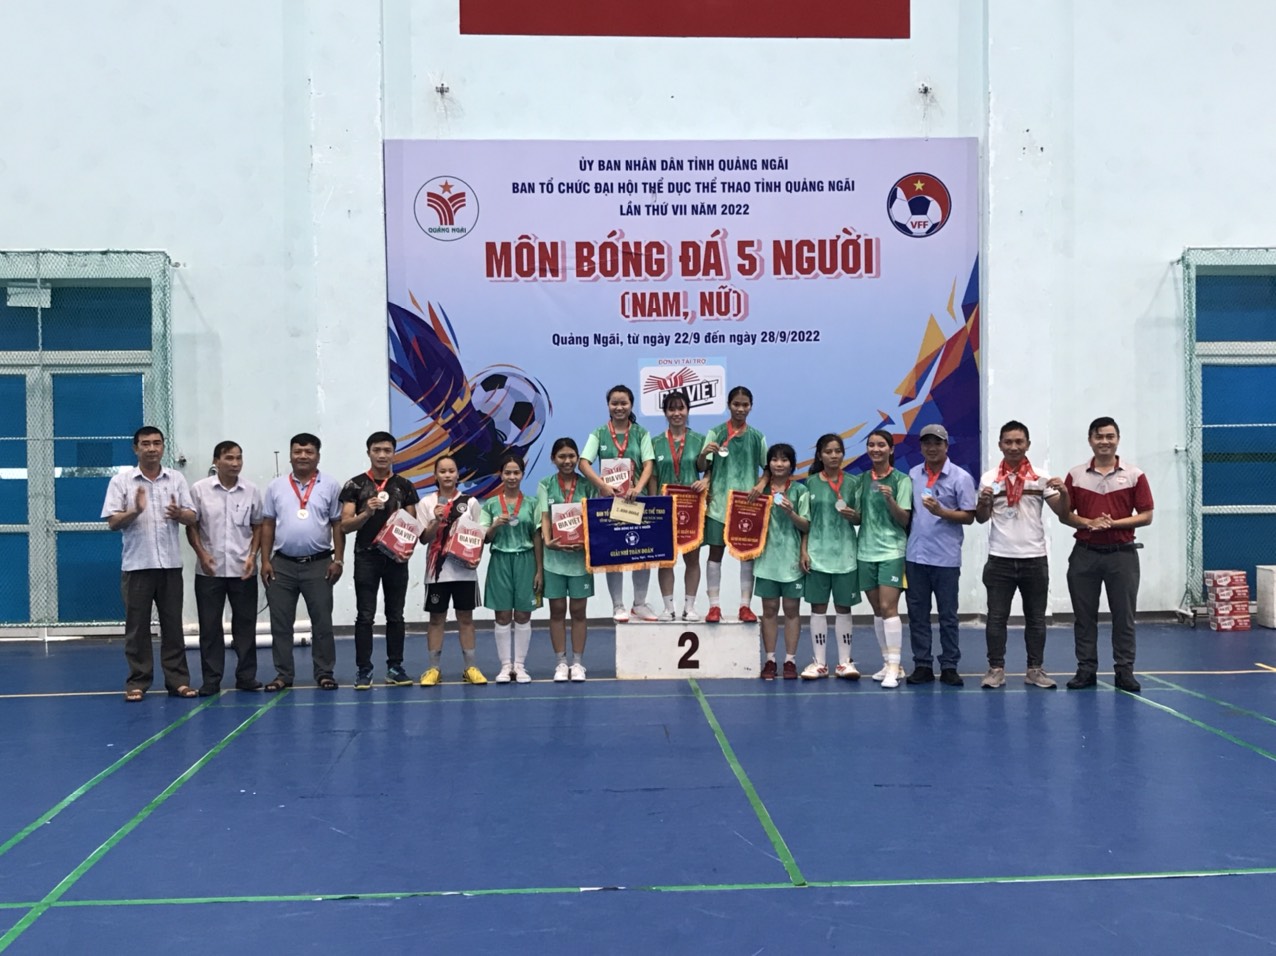 Đội bóng đá nữ của huyện Ba Tơ giành Huy chương Bạc tại Đại hội TDTT tỉnh Quảng Ngãi lần thứ VII, năm 2022